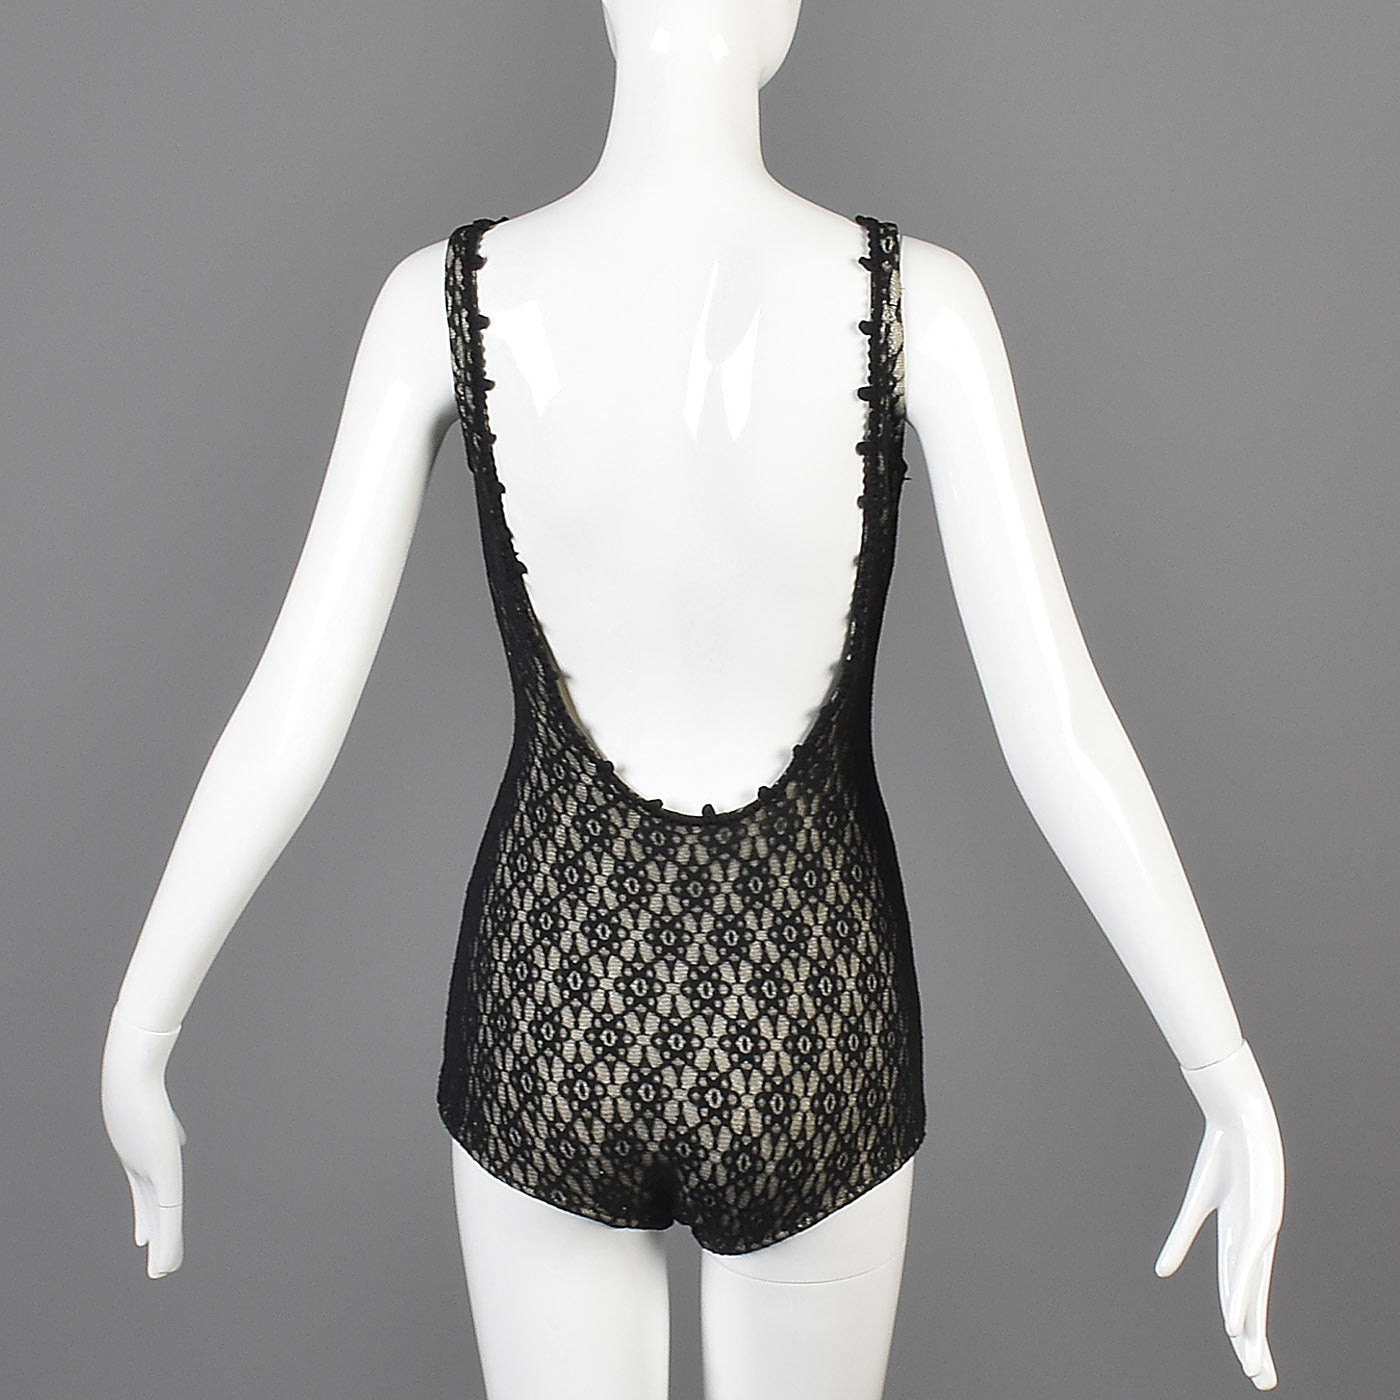 1950s Black Lace Illusion Swimsuit